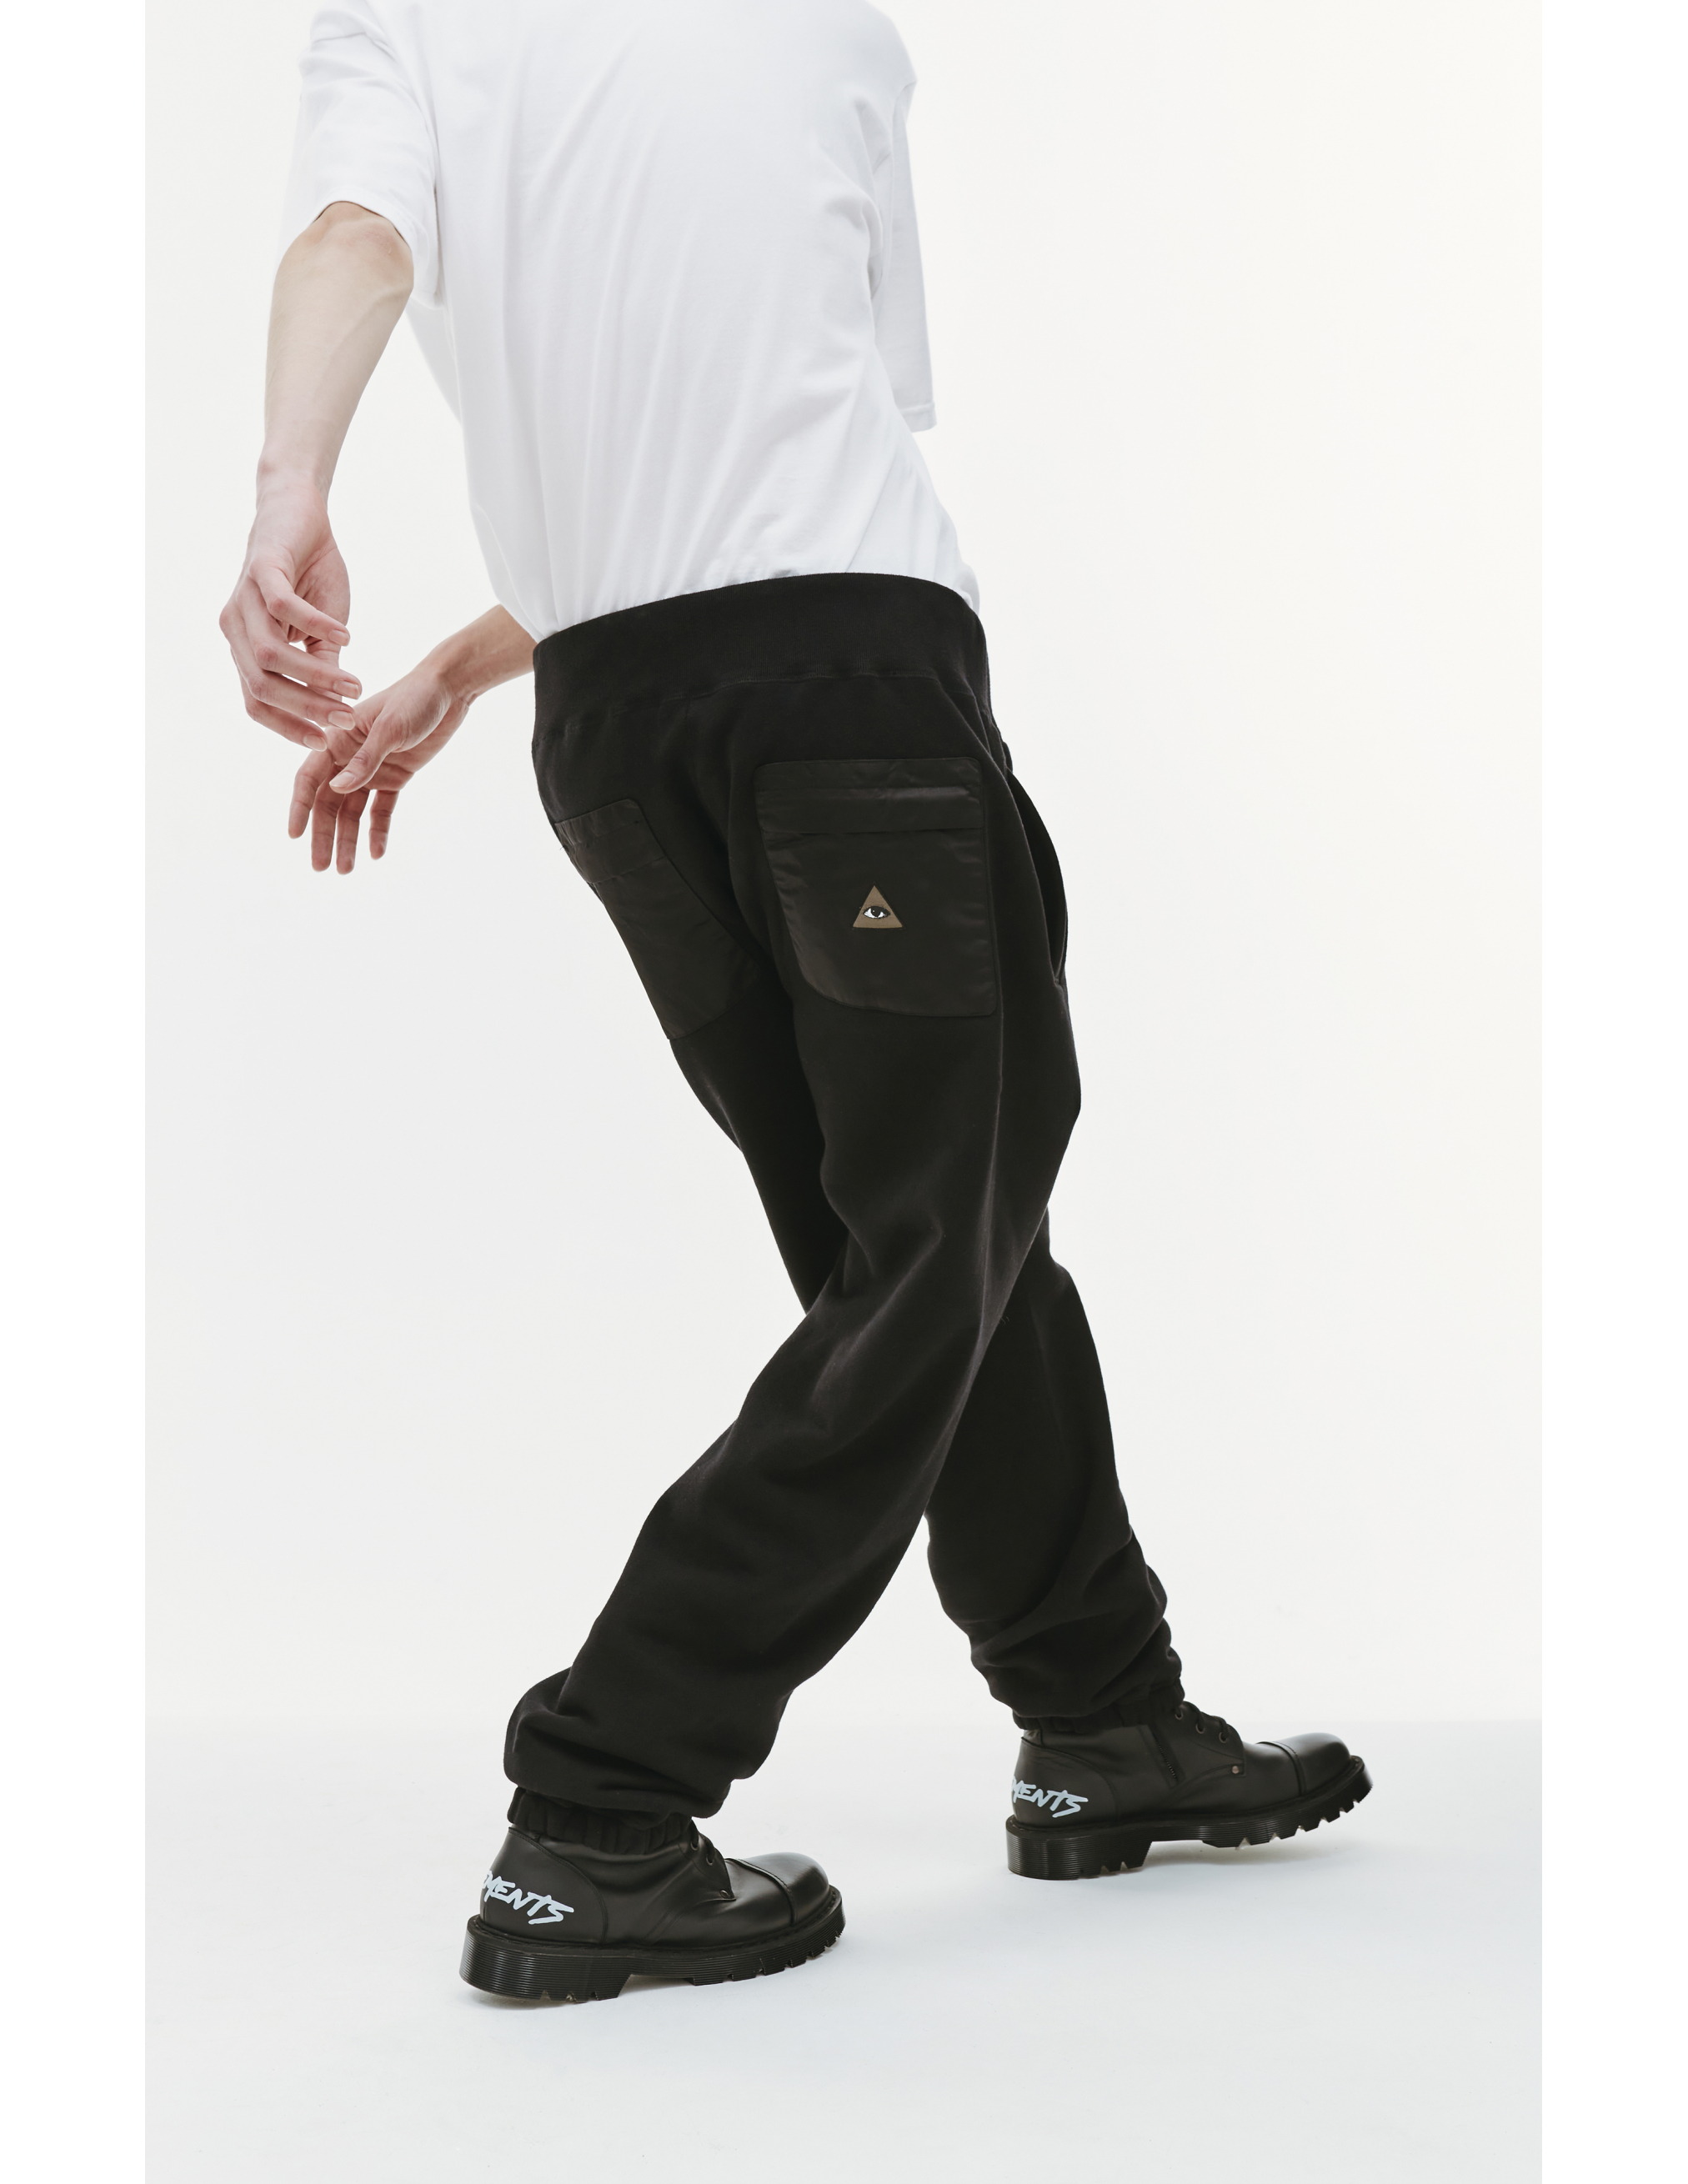 Спортивные брюки с вышивкой на кармане Undercover UC2B4503/3, размер 5 UC2B4503/3 - фото 4